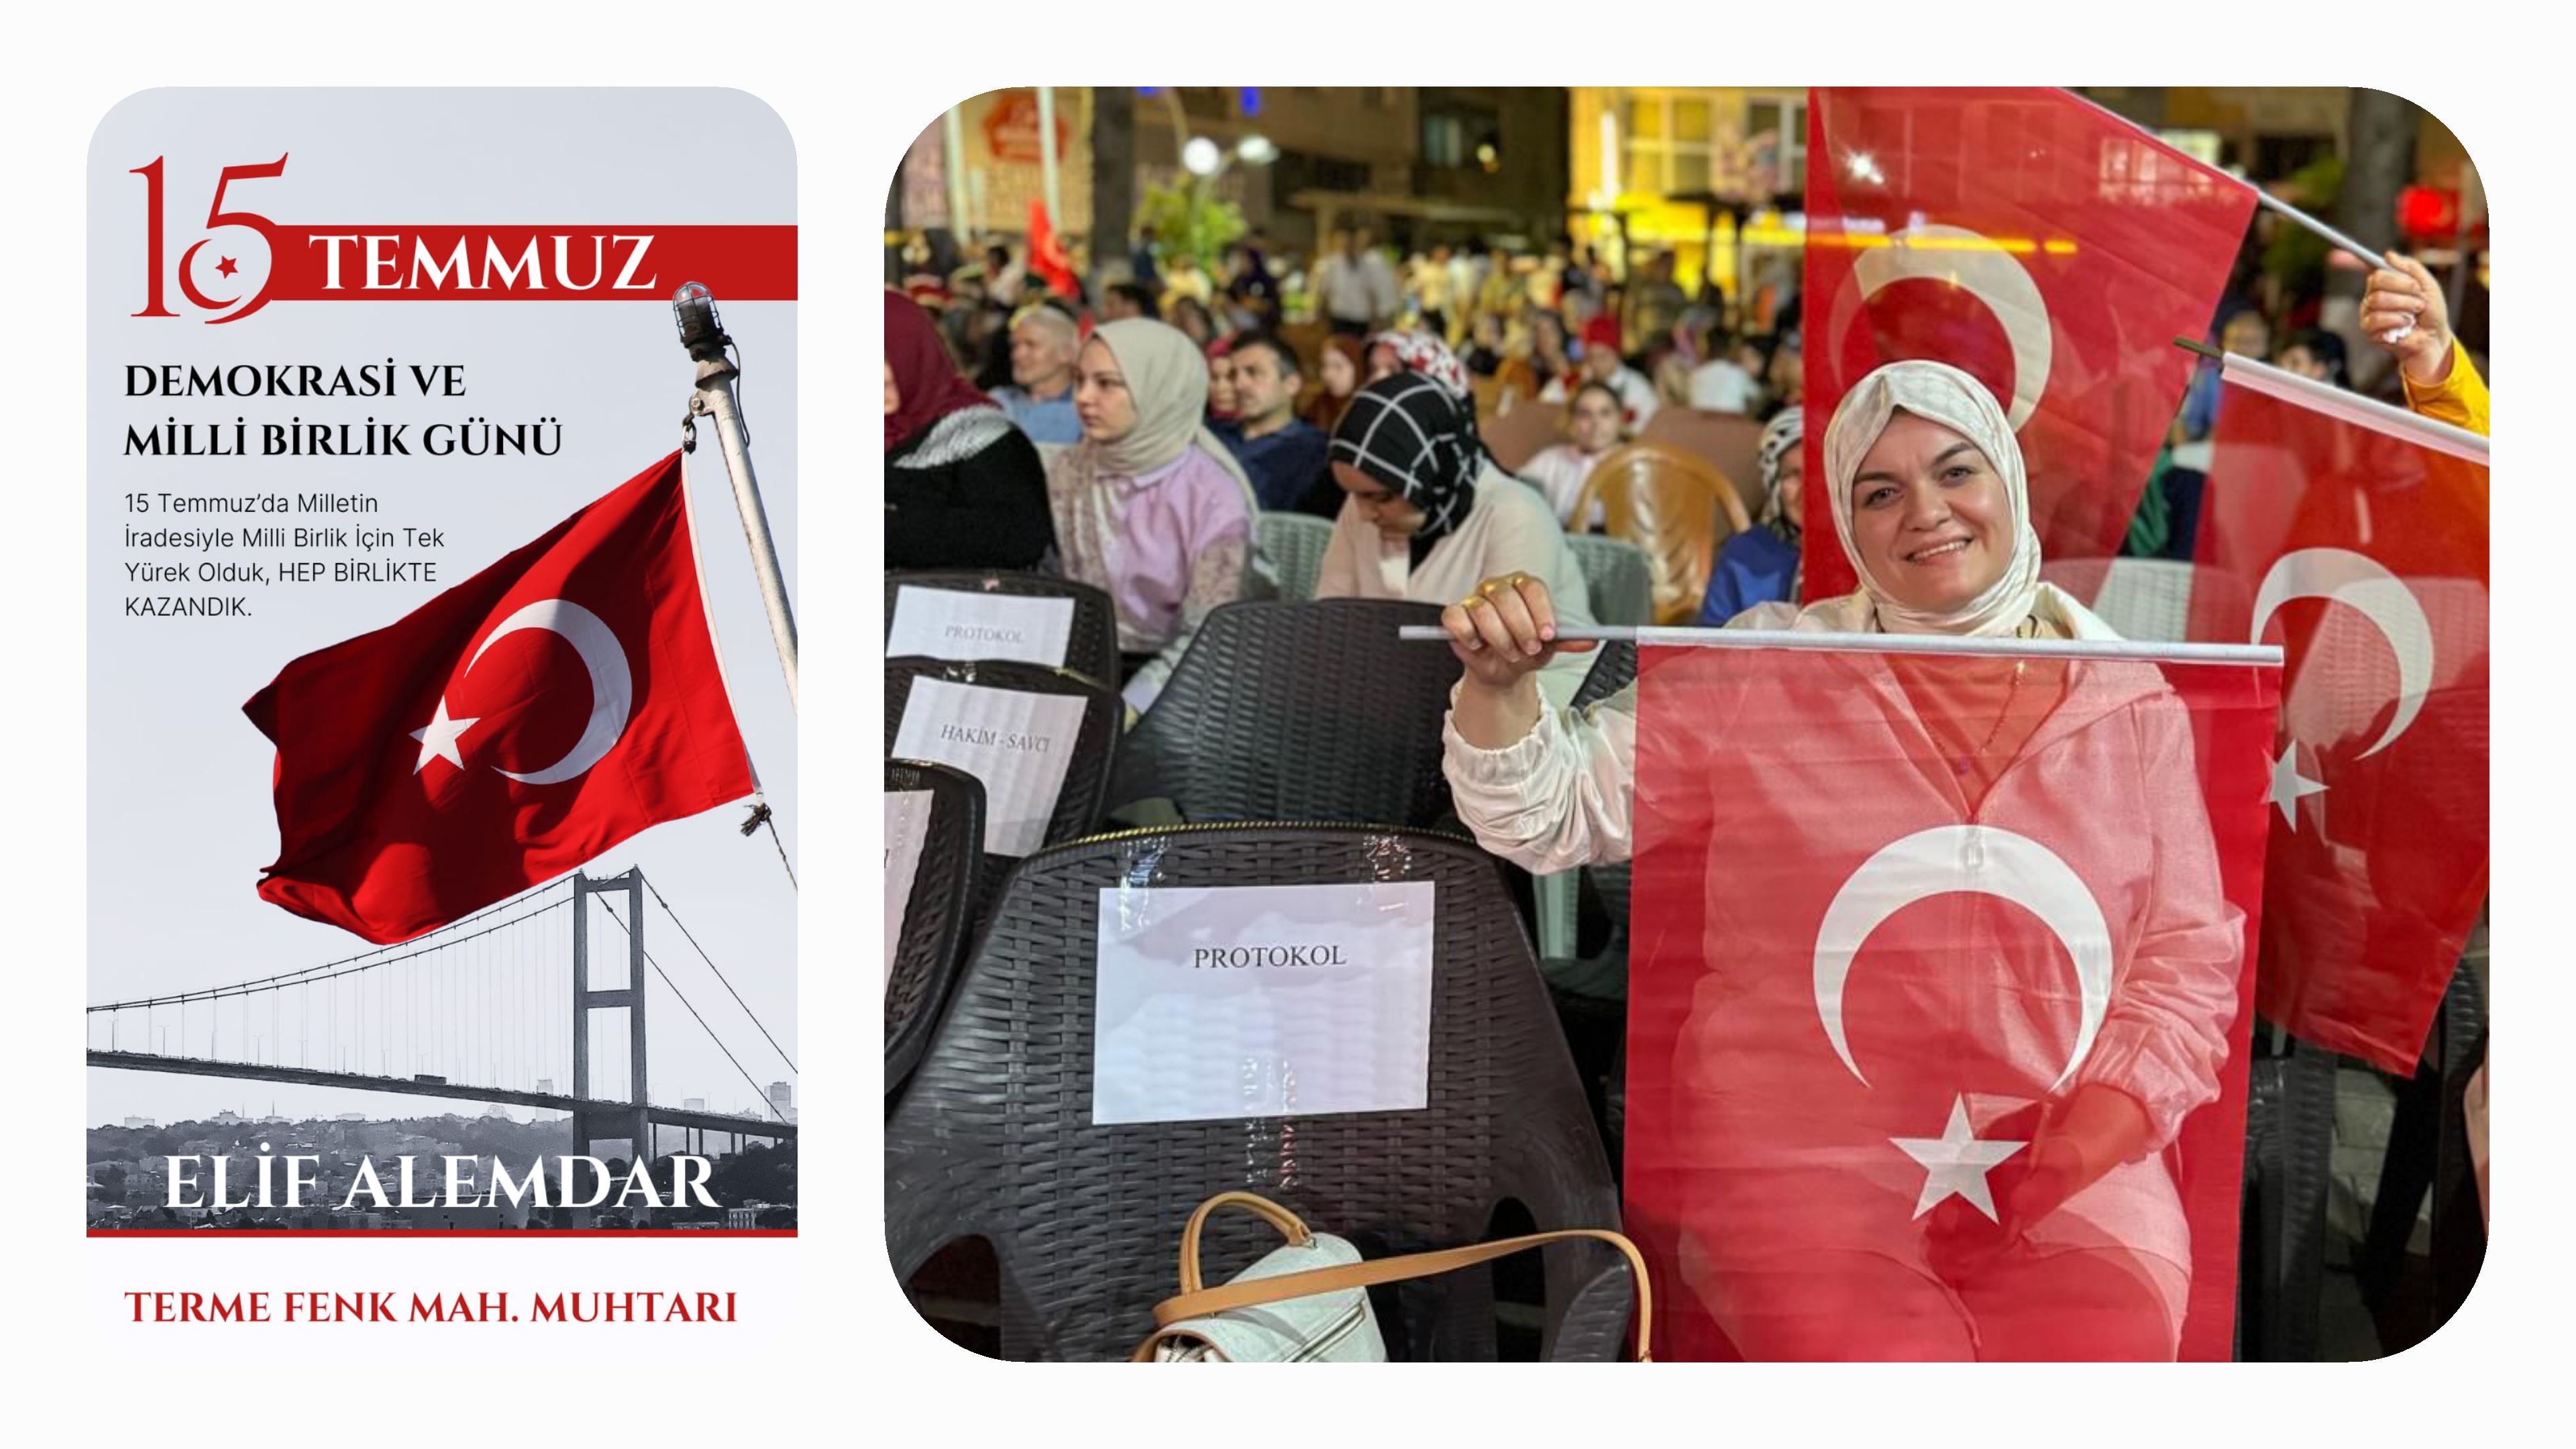 Muhtar Elif Alemdar'dan 15 Temmuz Demokrasi ve Milli Birlik Günü Mesajı